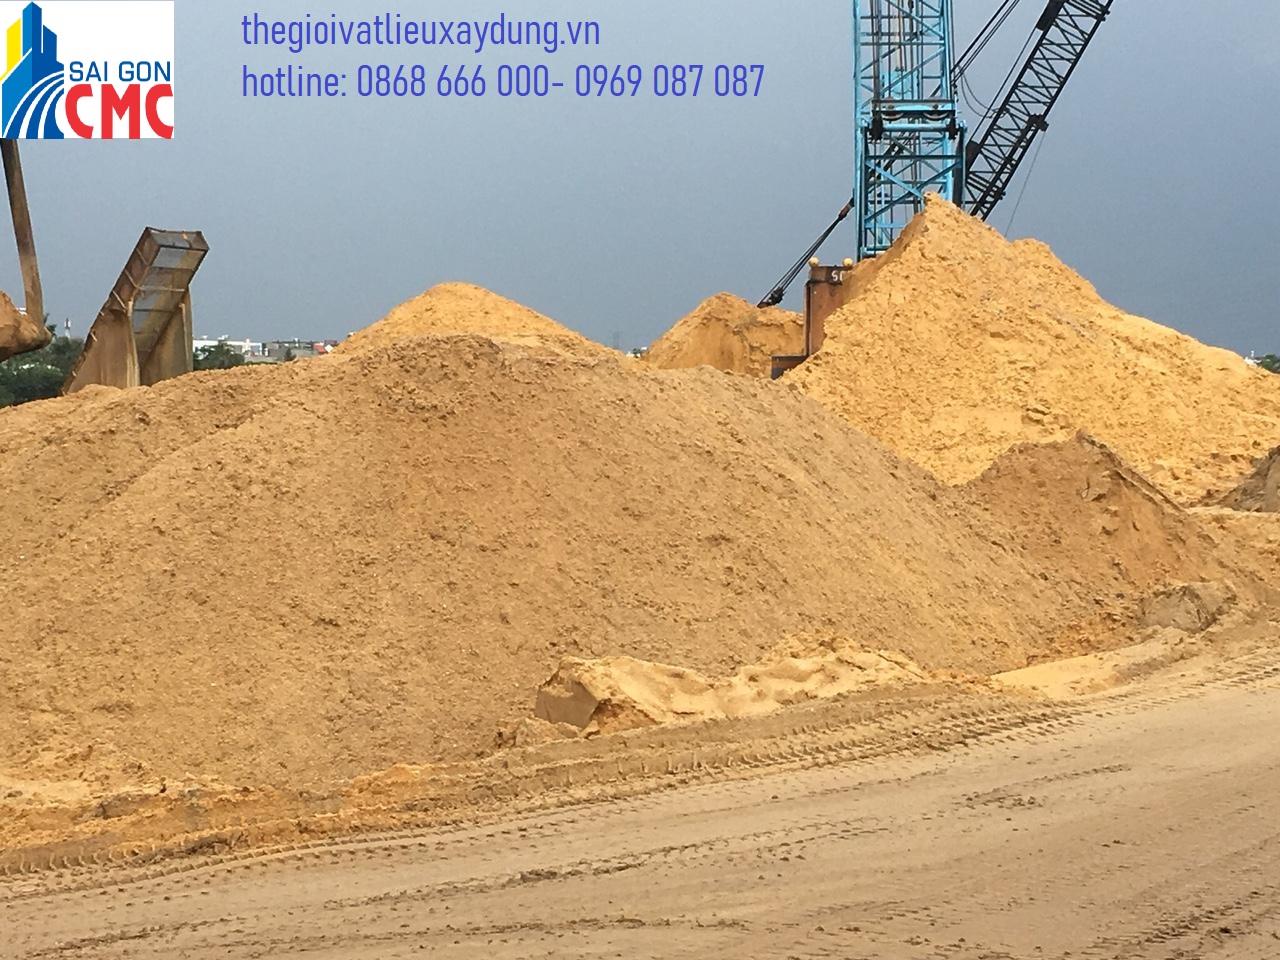 Sài Gòn CMC chuyên phân phối vật liệu cát xây dựng cho công trình tại Miền Nam